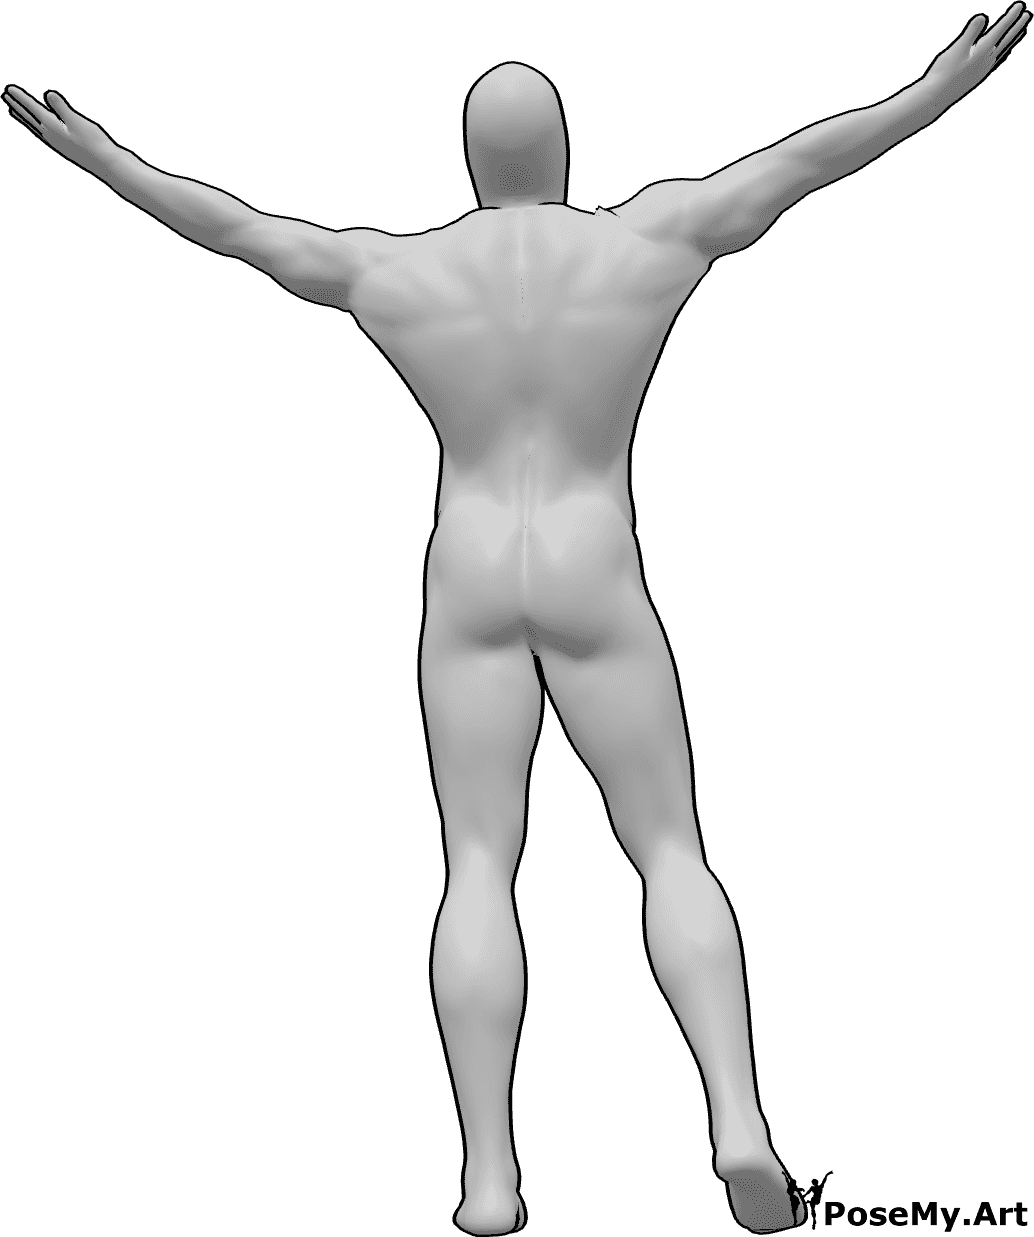 Posen-Referenz- Männliche Pose mit erhobenen Händen - Das Männchen steht, hebt beide Hände hoch und blickt in den Himmel